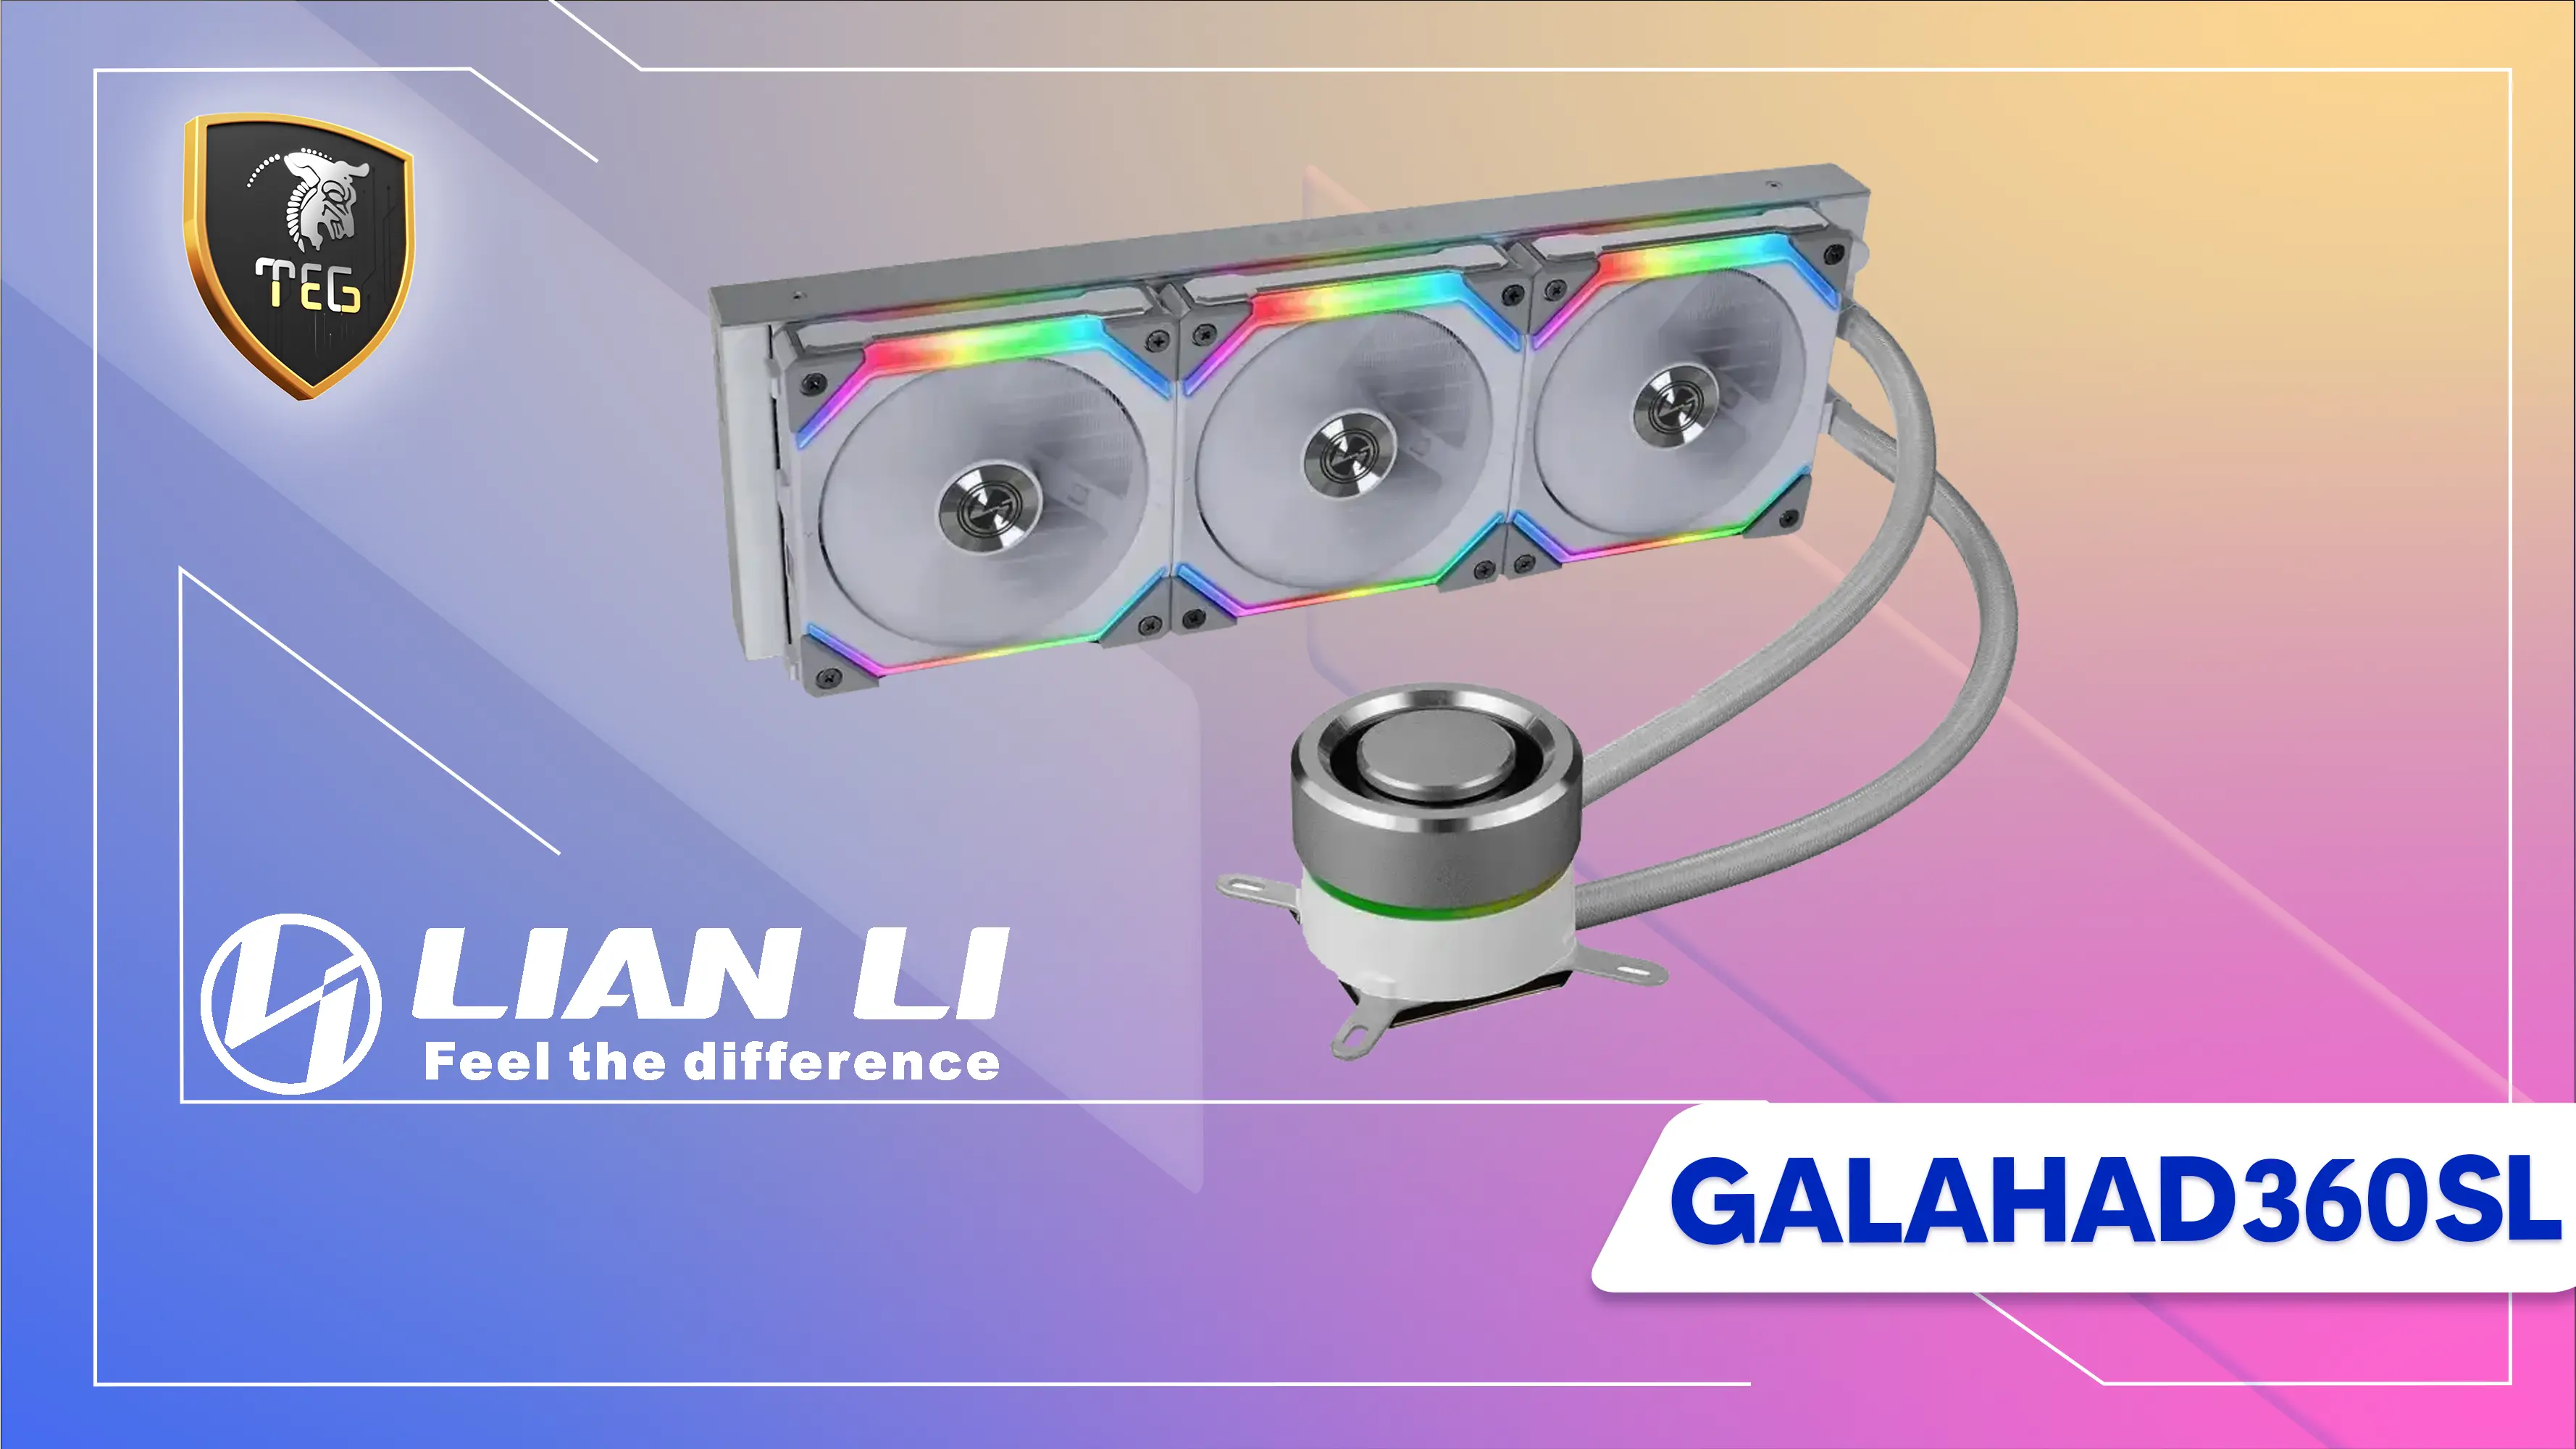 معرفی فن خنک کننده پردازنده لیان لی مدل Galahad 360 SL